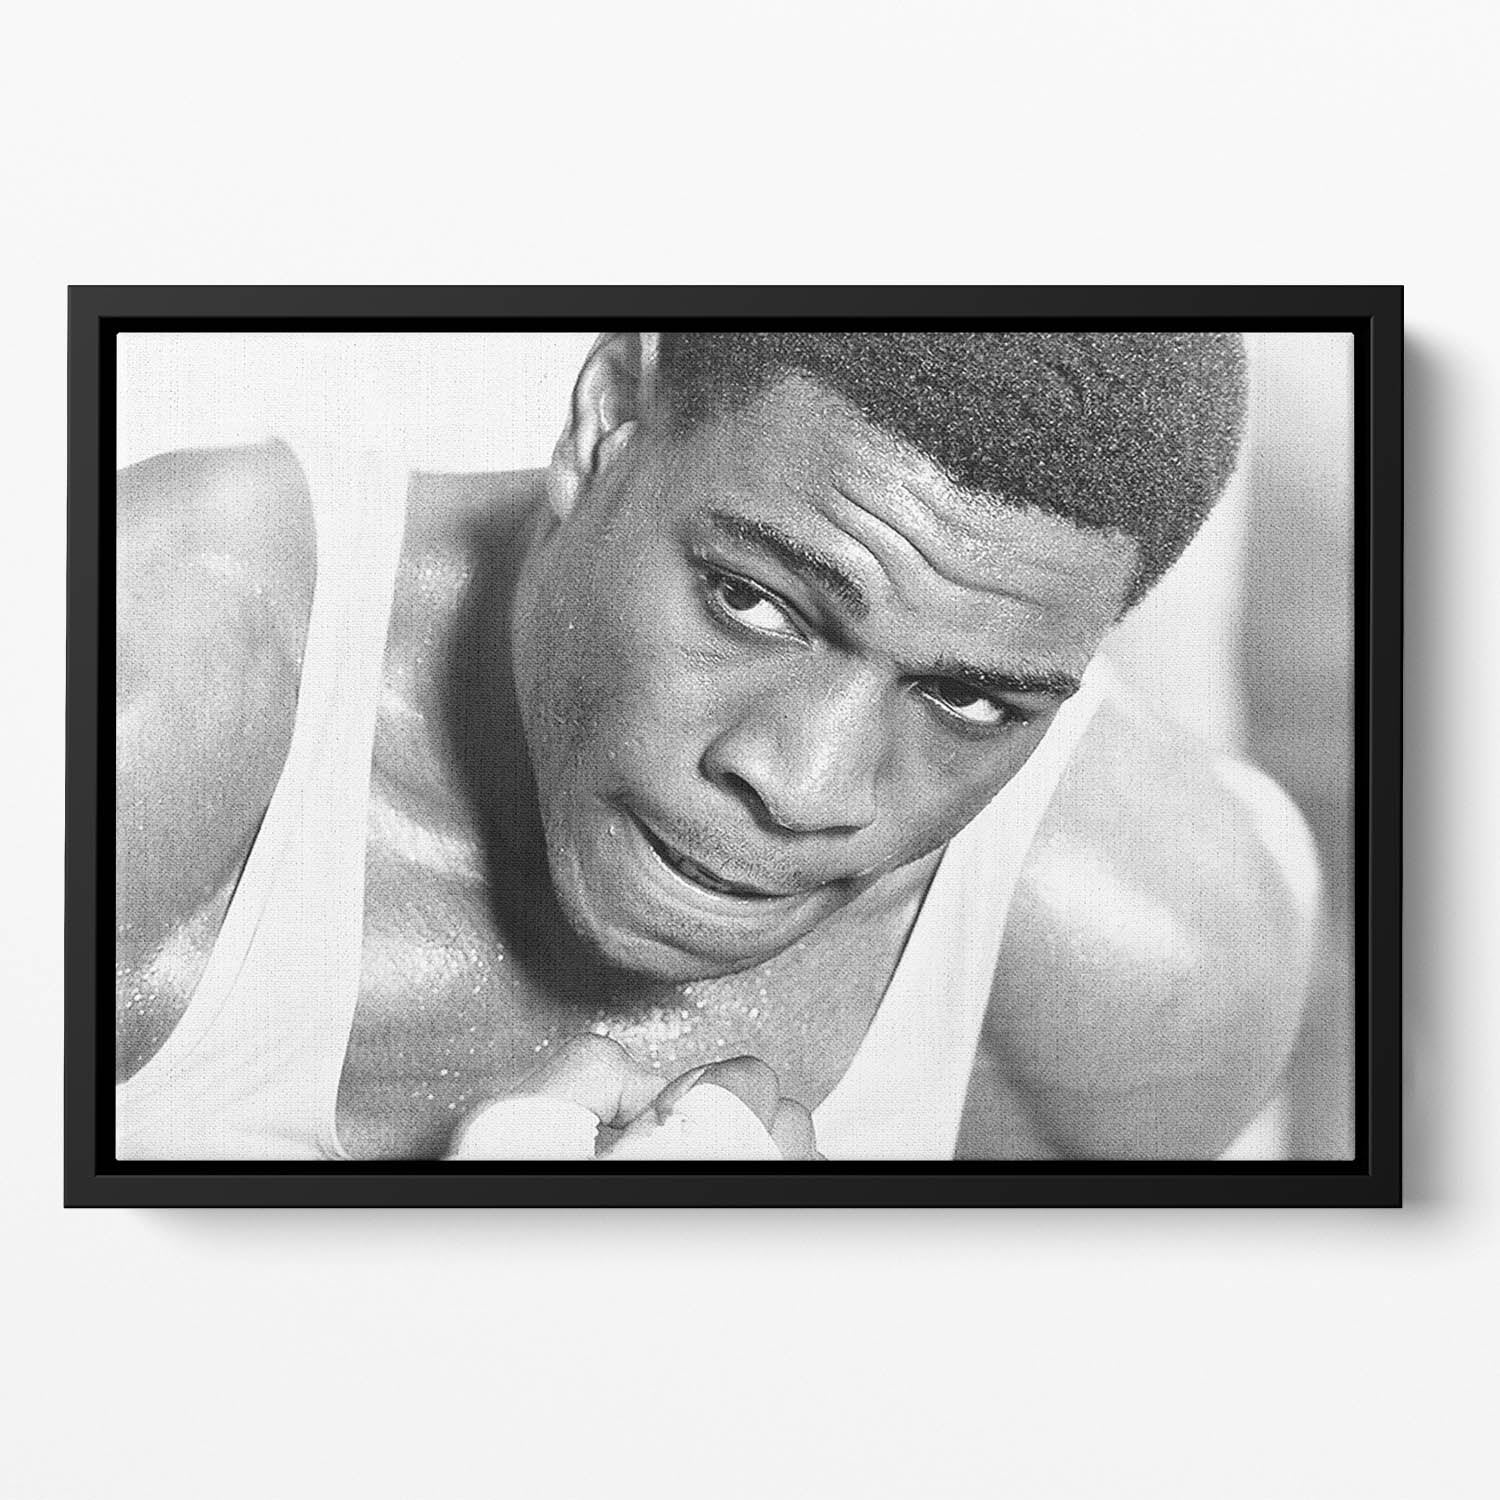 Boxer Frank Bruno Floating Framed Canvas